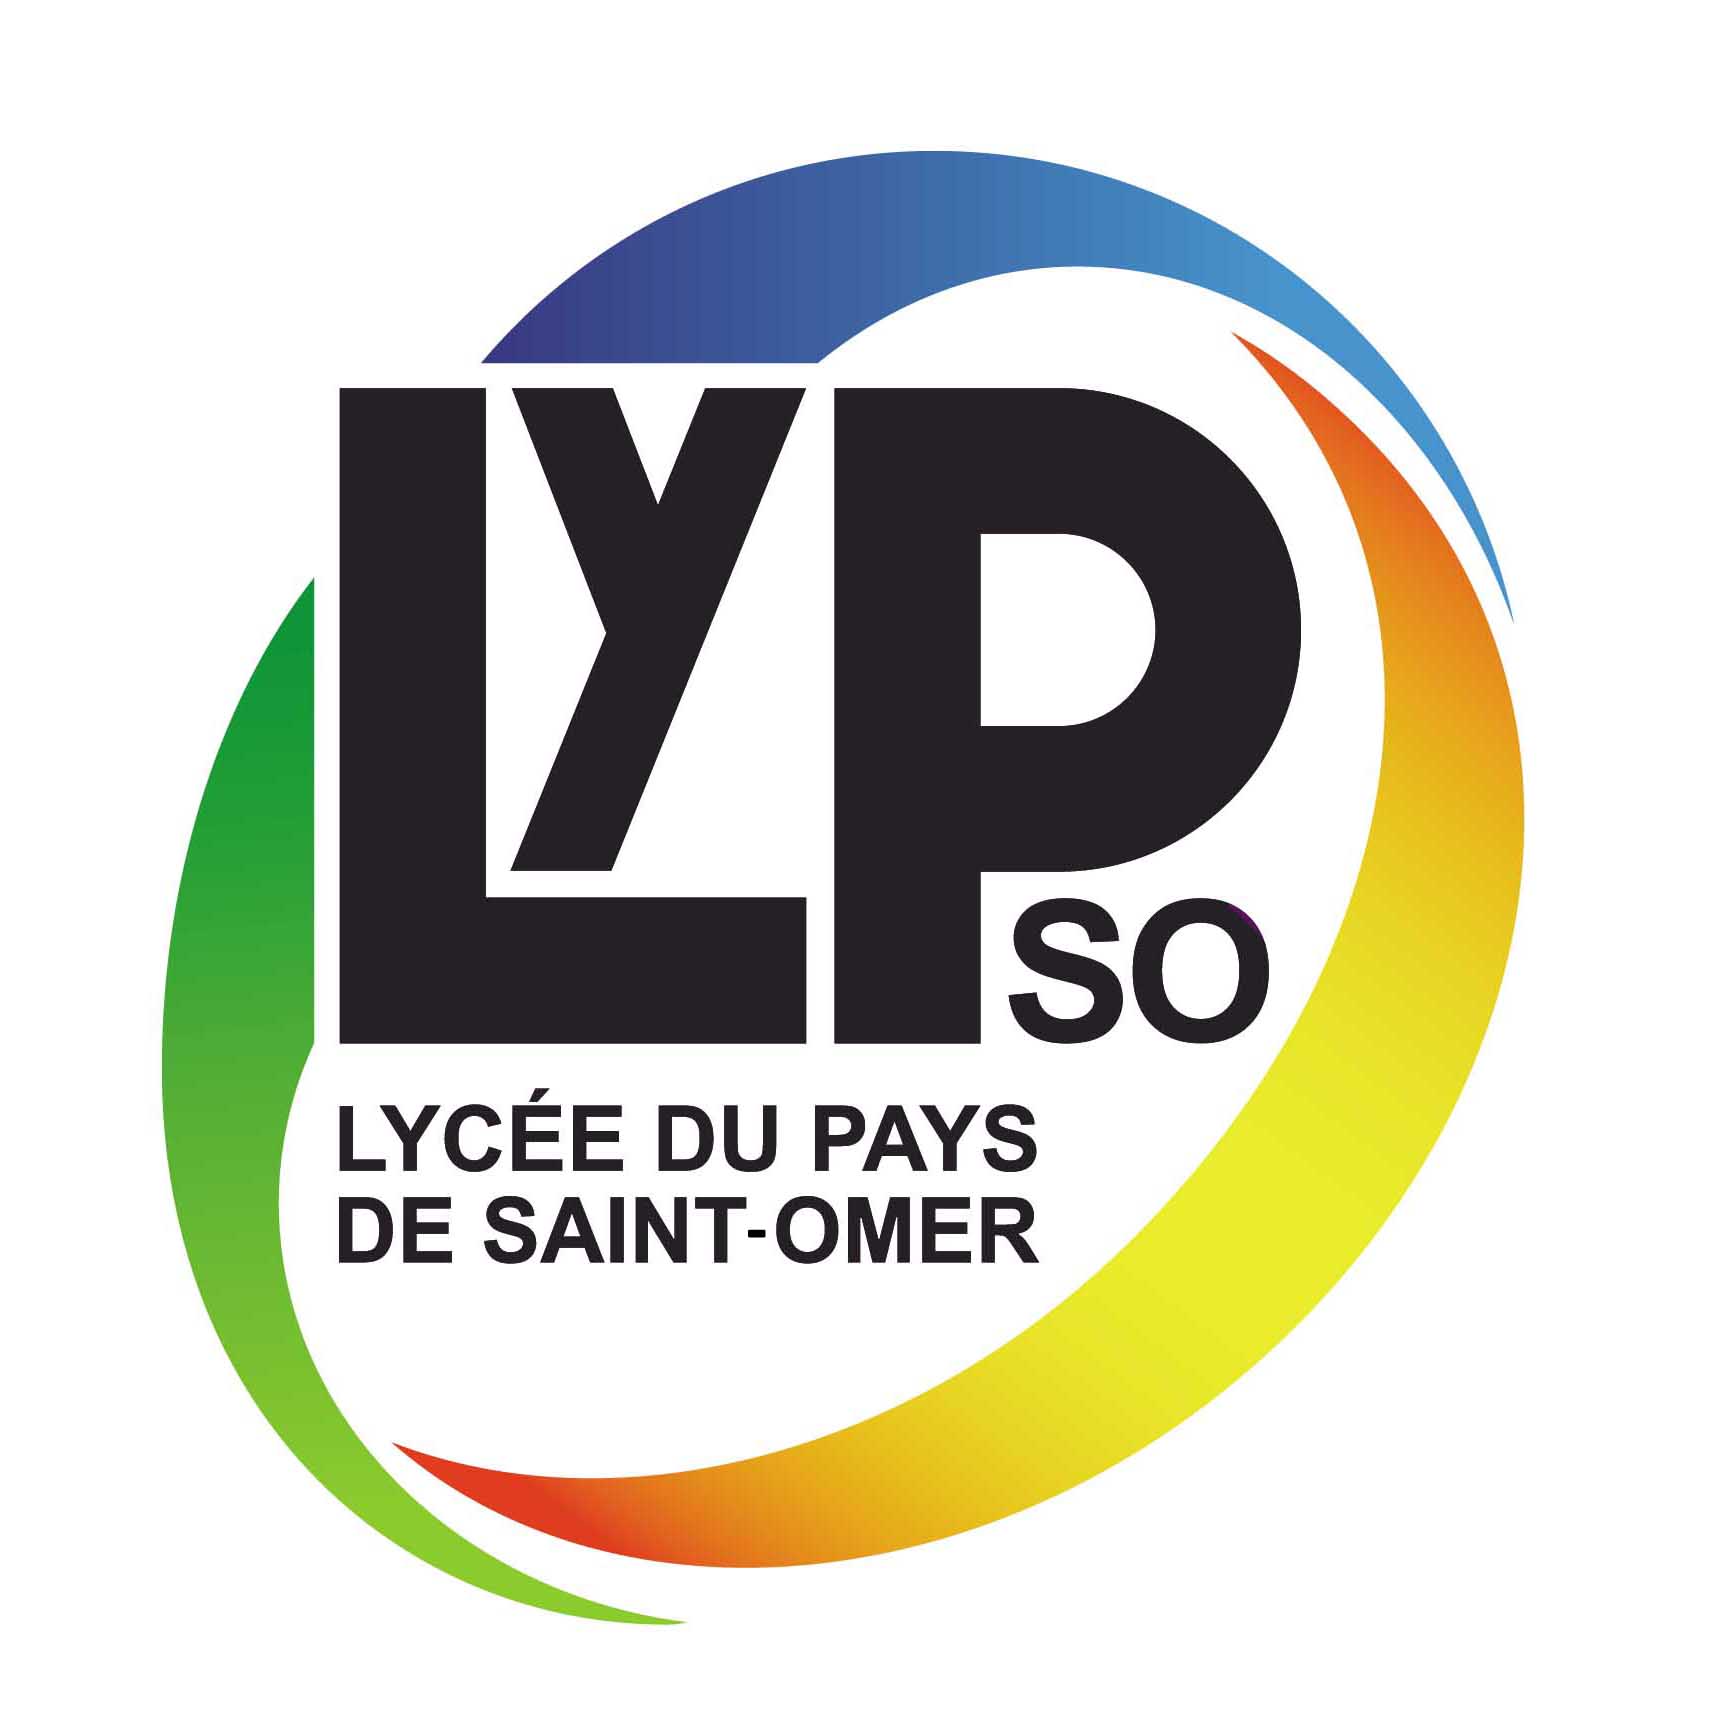 LYCÉE DU PAYS DE SAINT-OMER, SITE DURAND (LYPSO)